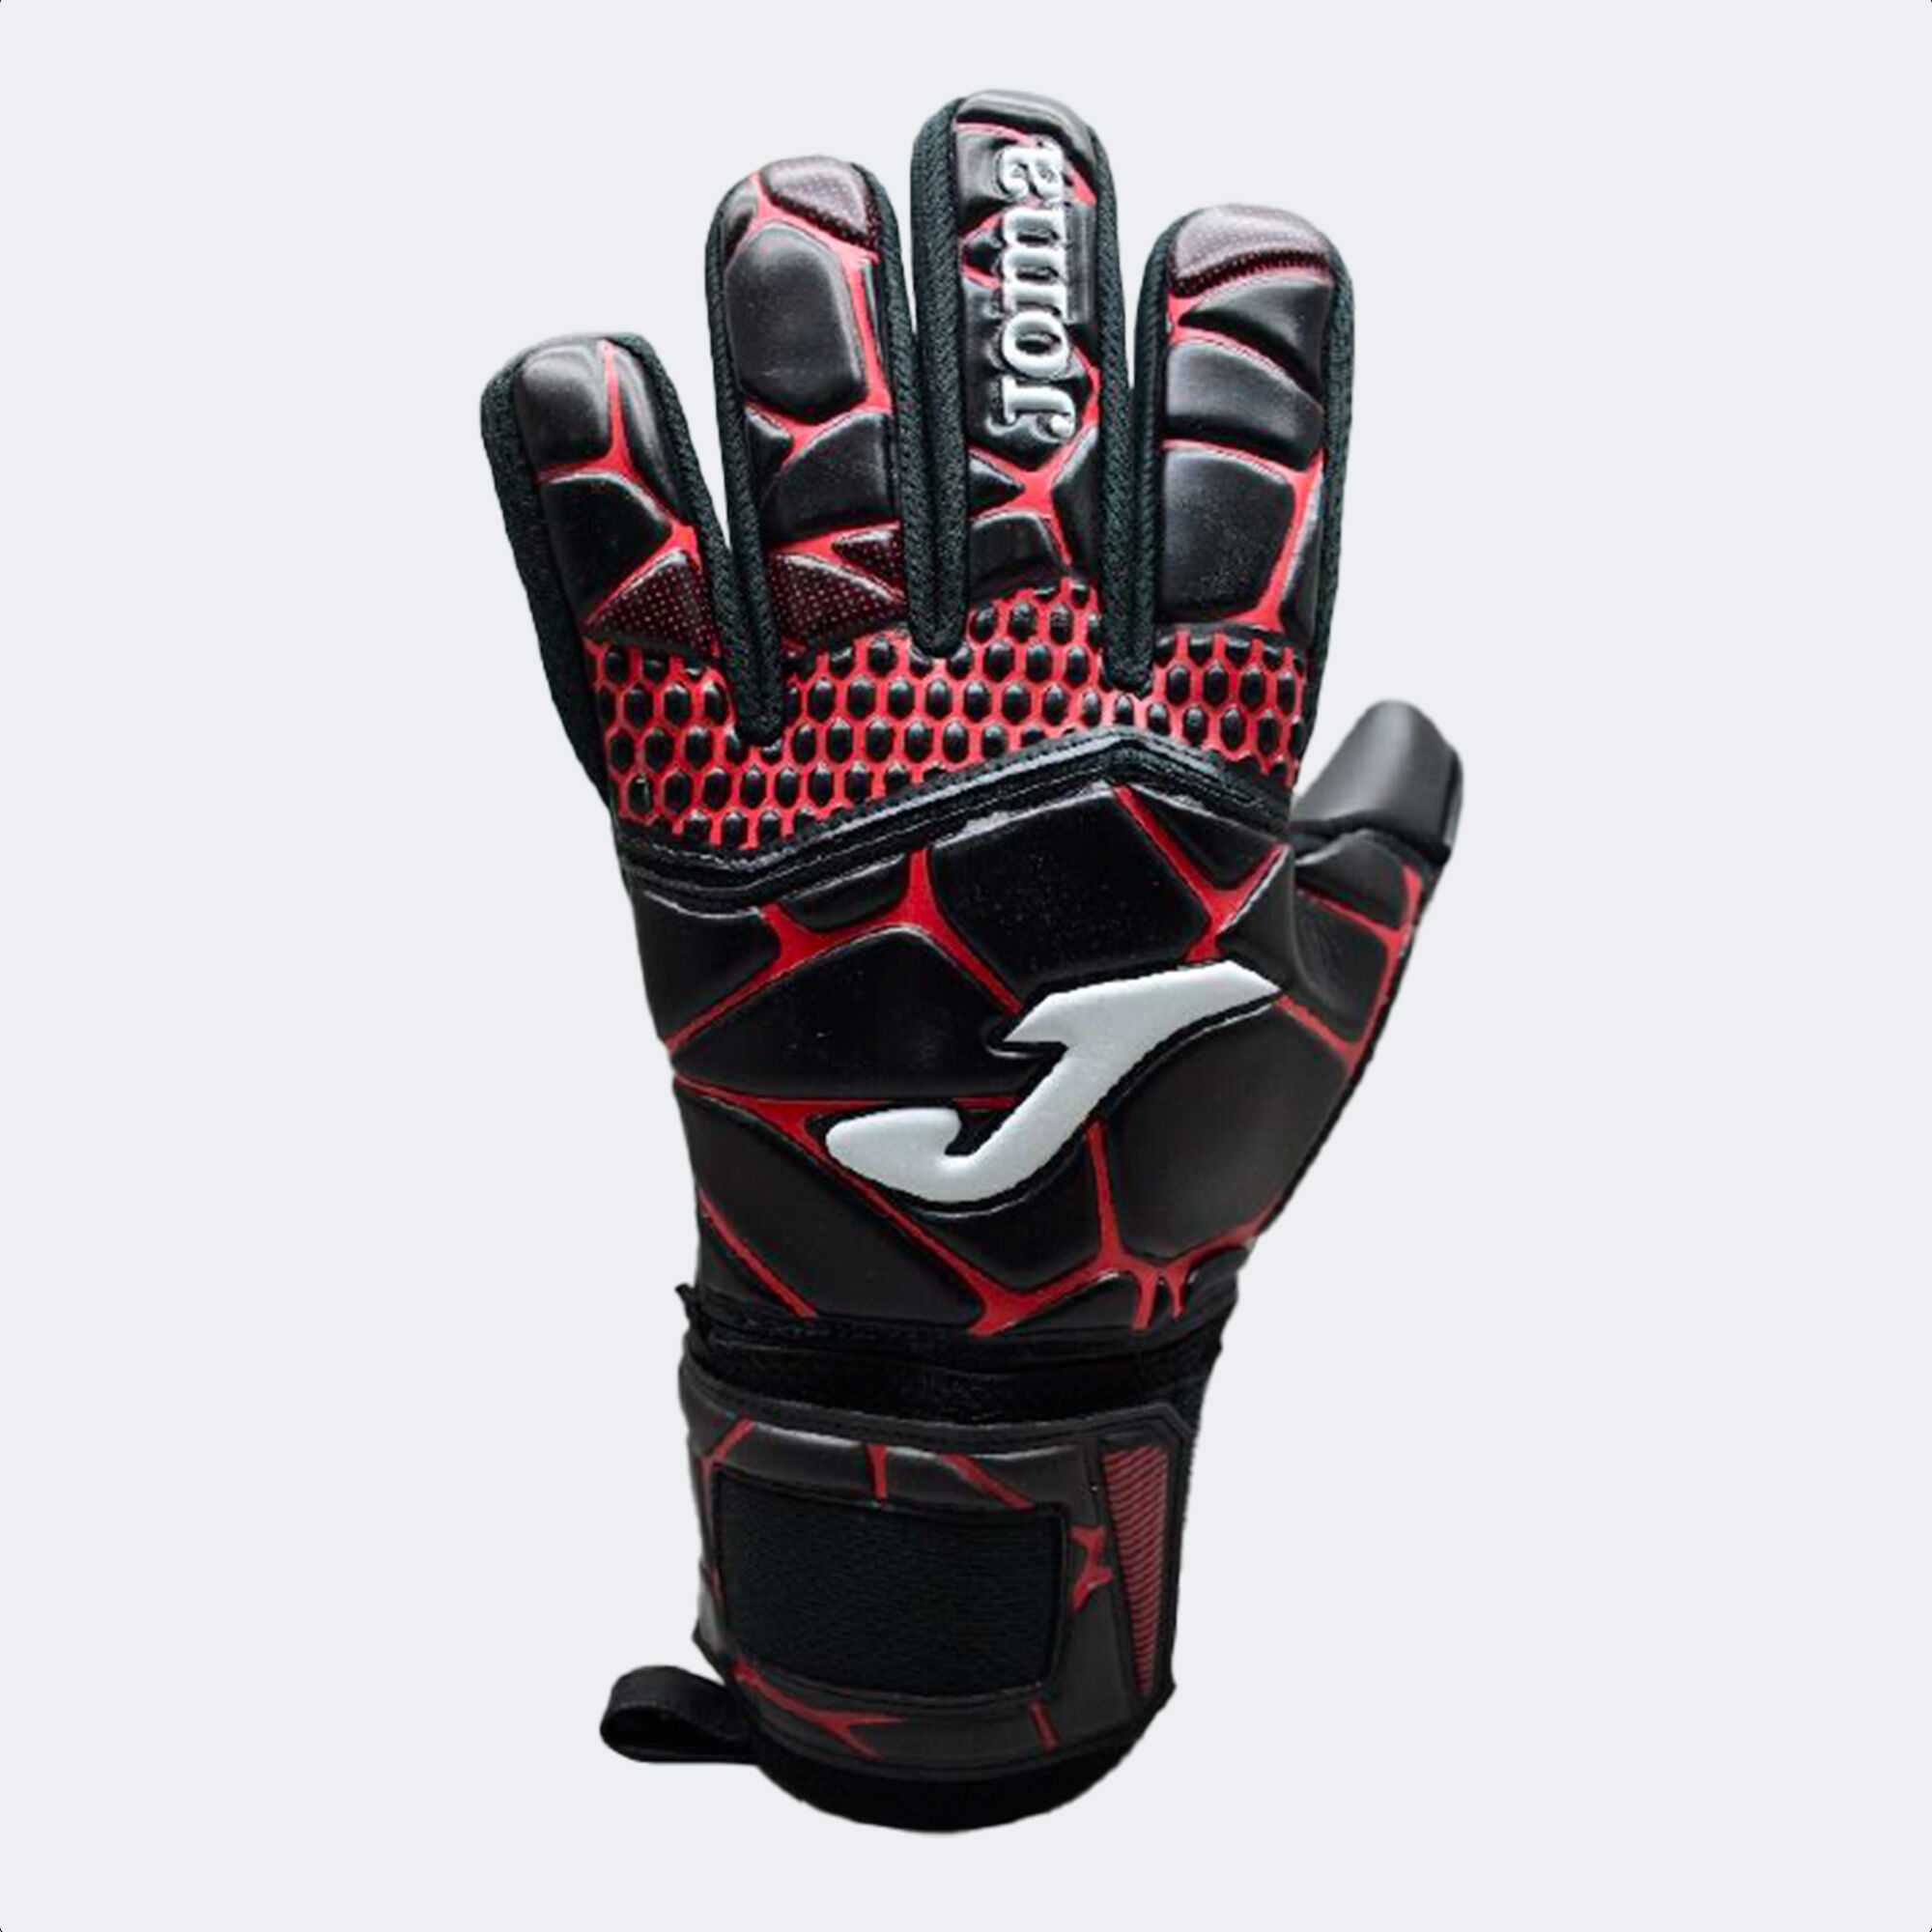 Luvas de guarda-redes futebol Gk-Pro preto vermelho